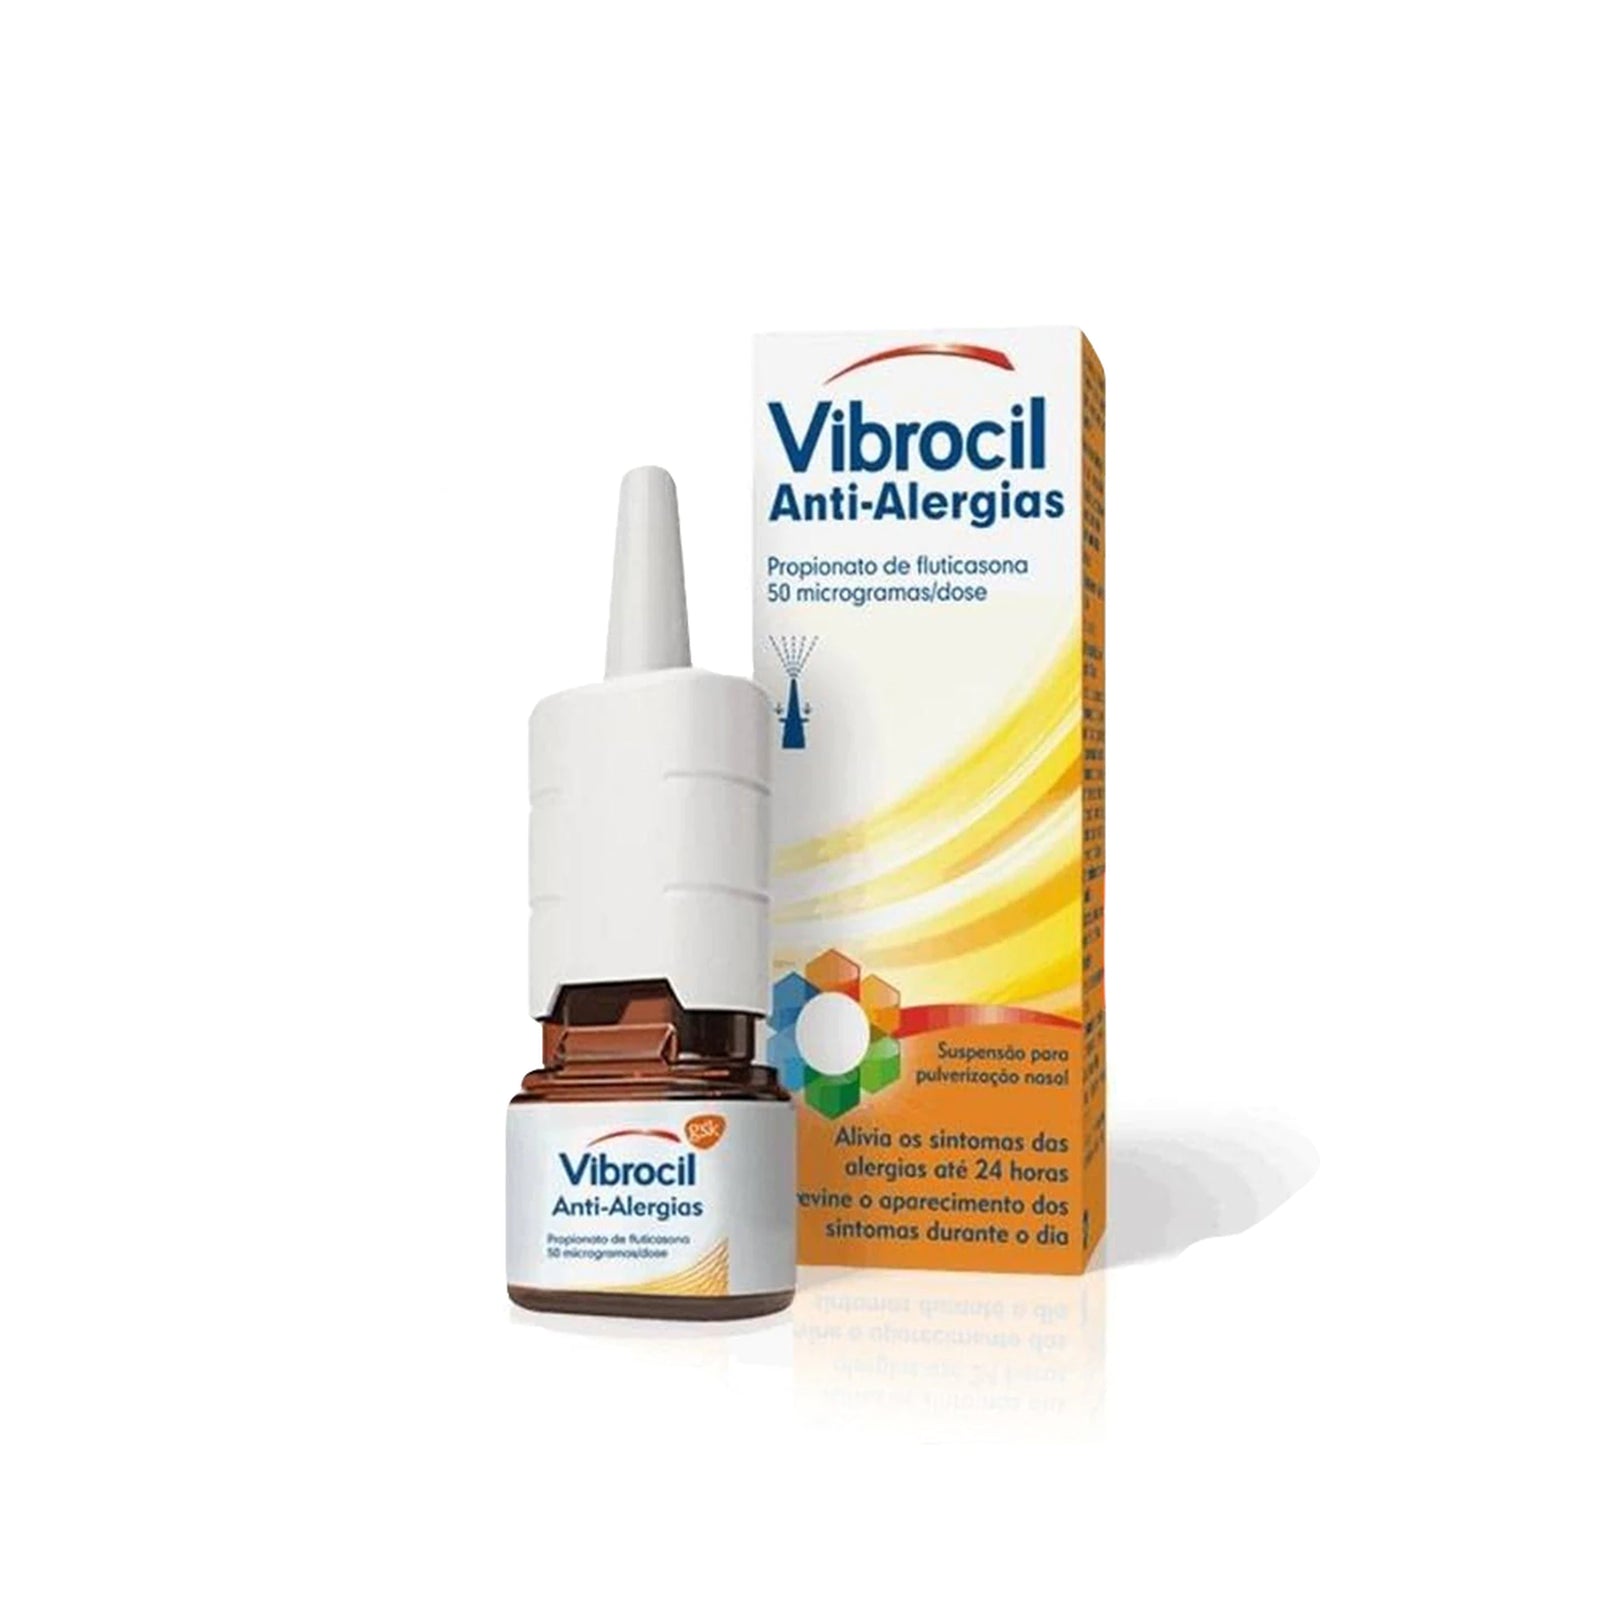 Vibrocil Anti-Alergias 50 mg/Dose x60 Doses Suspensão Pulverização Nasal